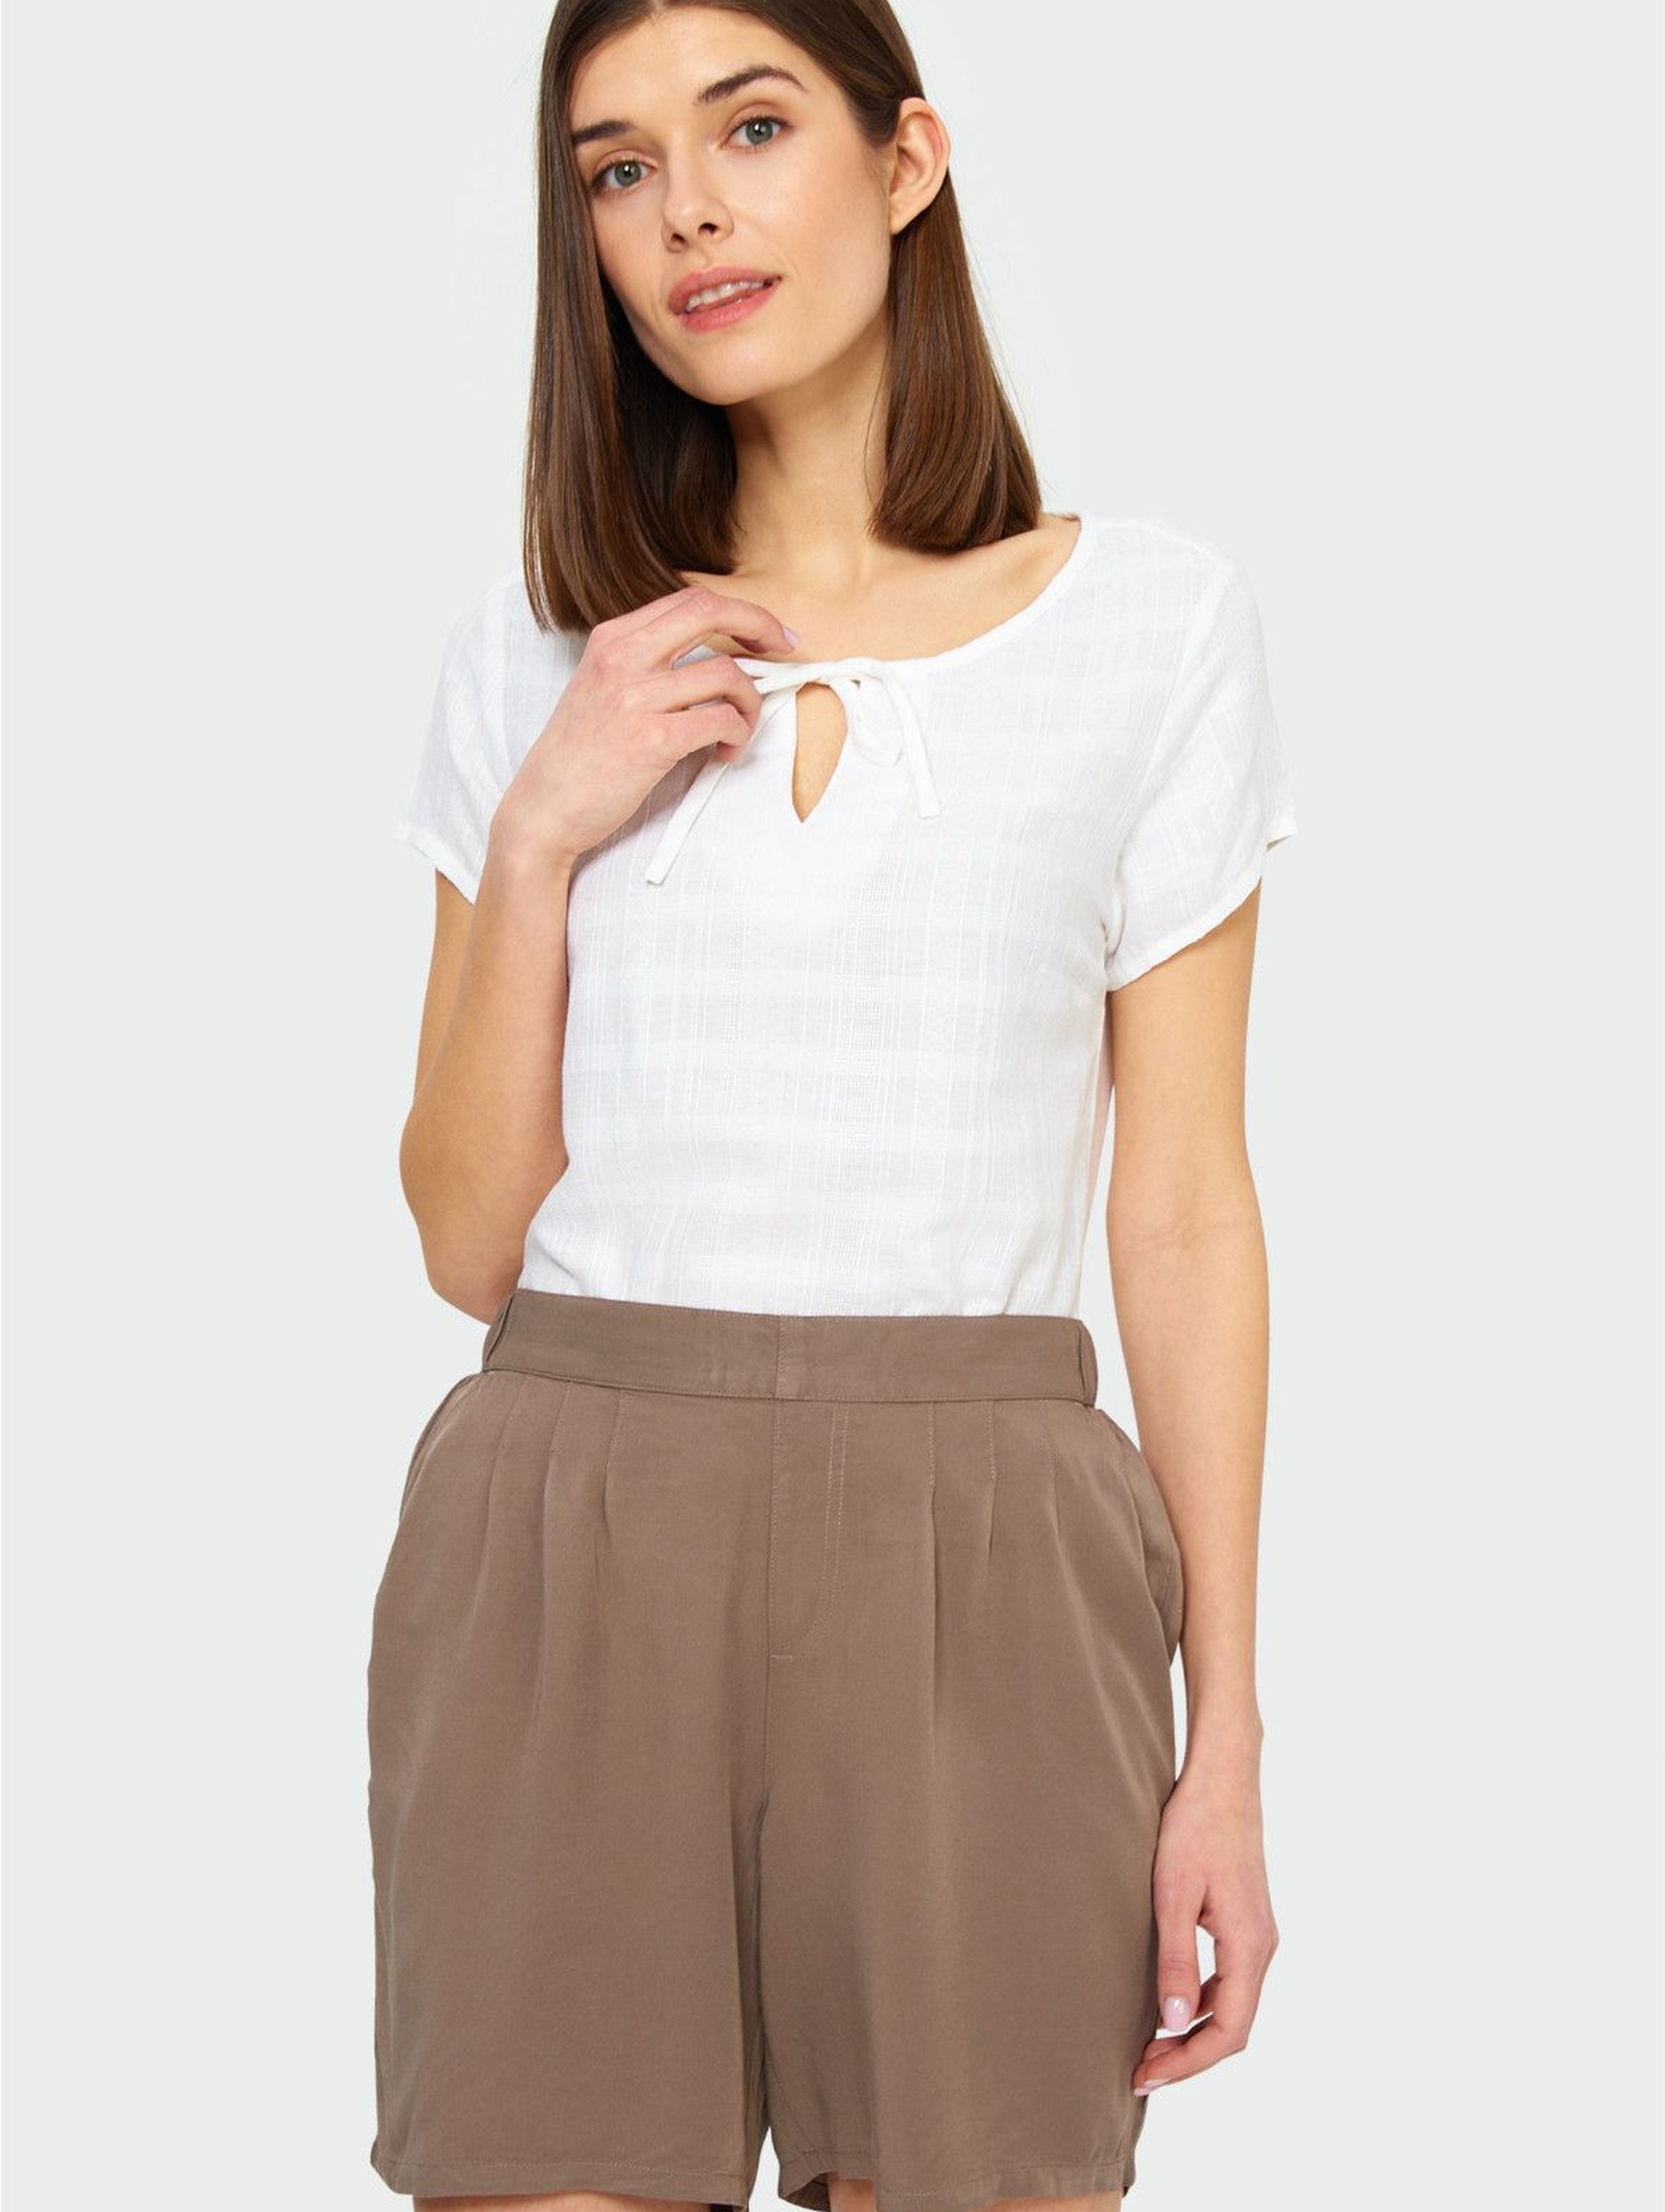 Bluzka damska z krótkim rękawem wiązana przy dekolcie- biała